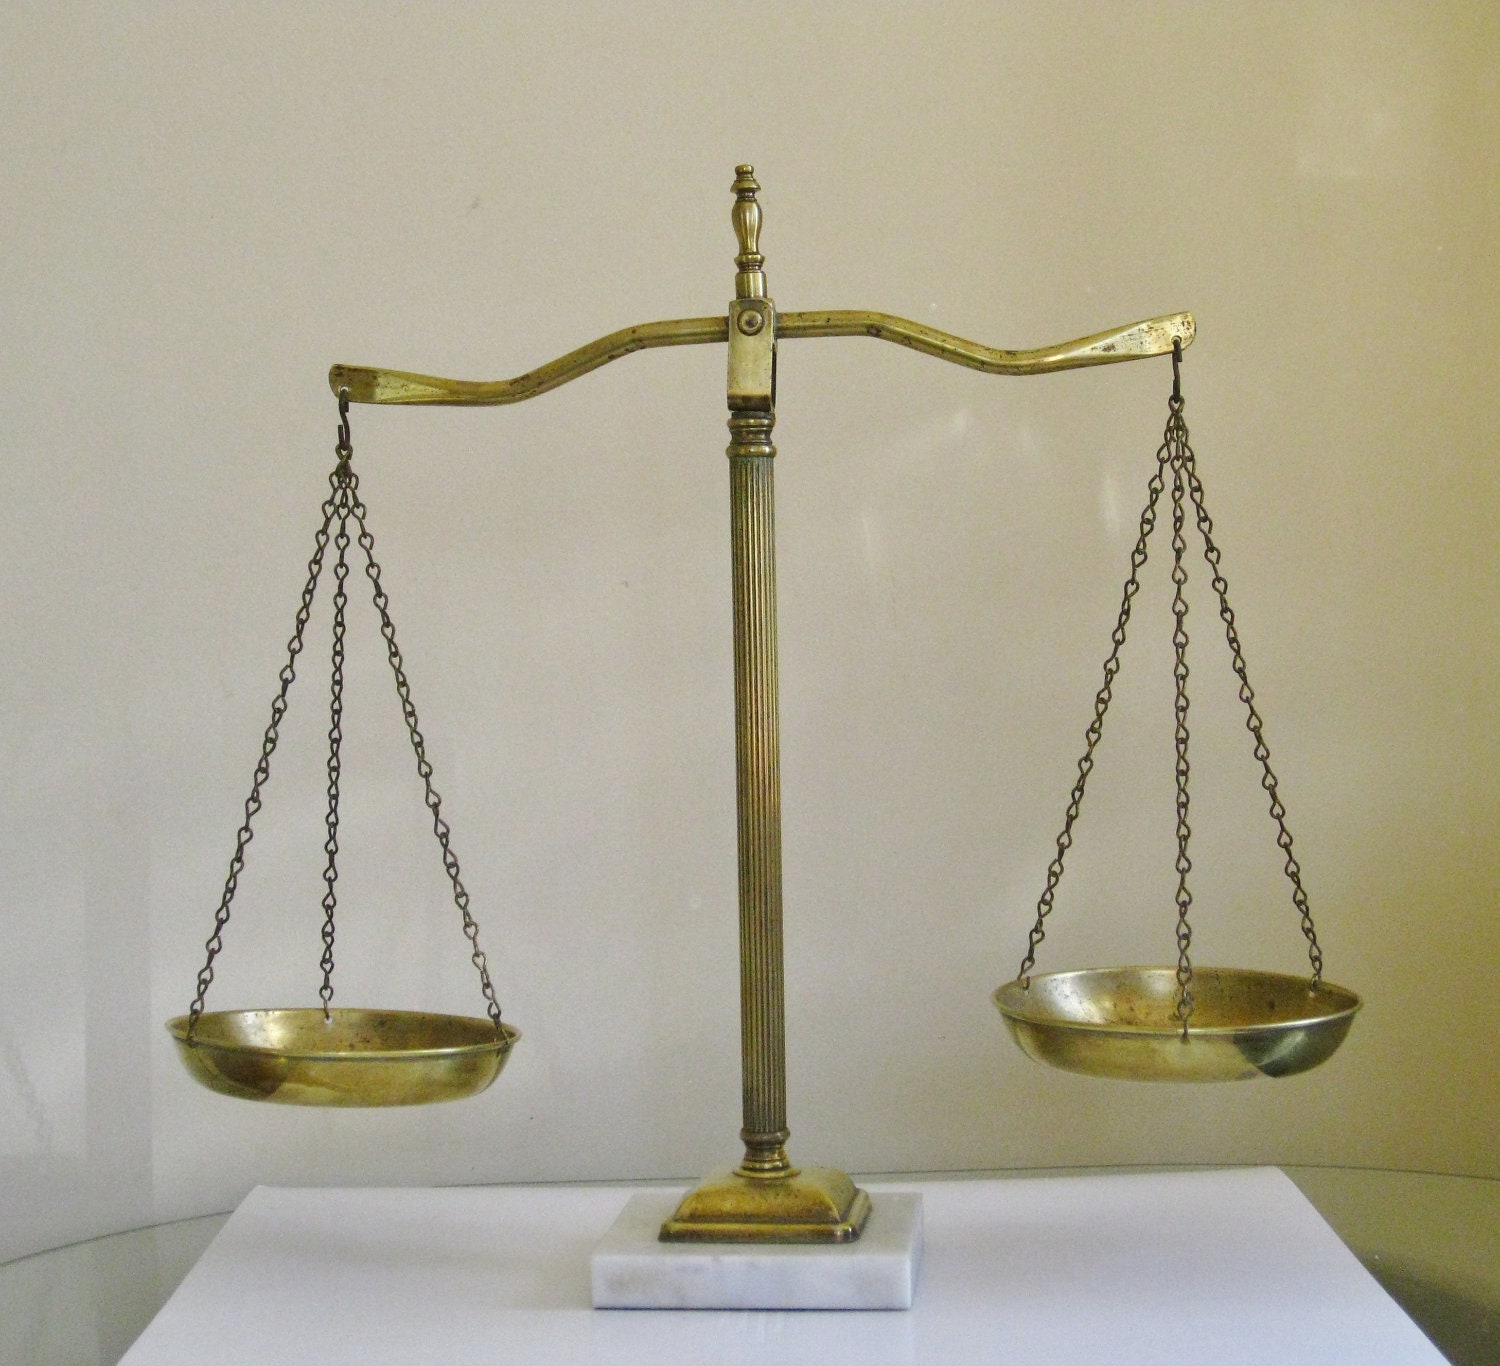 Весы суда. Судейские весы. Весы правосудия. Весы суд. Весы справедливости.